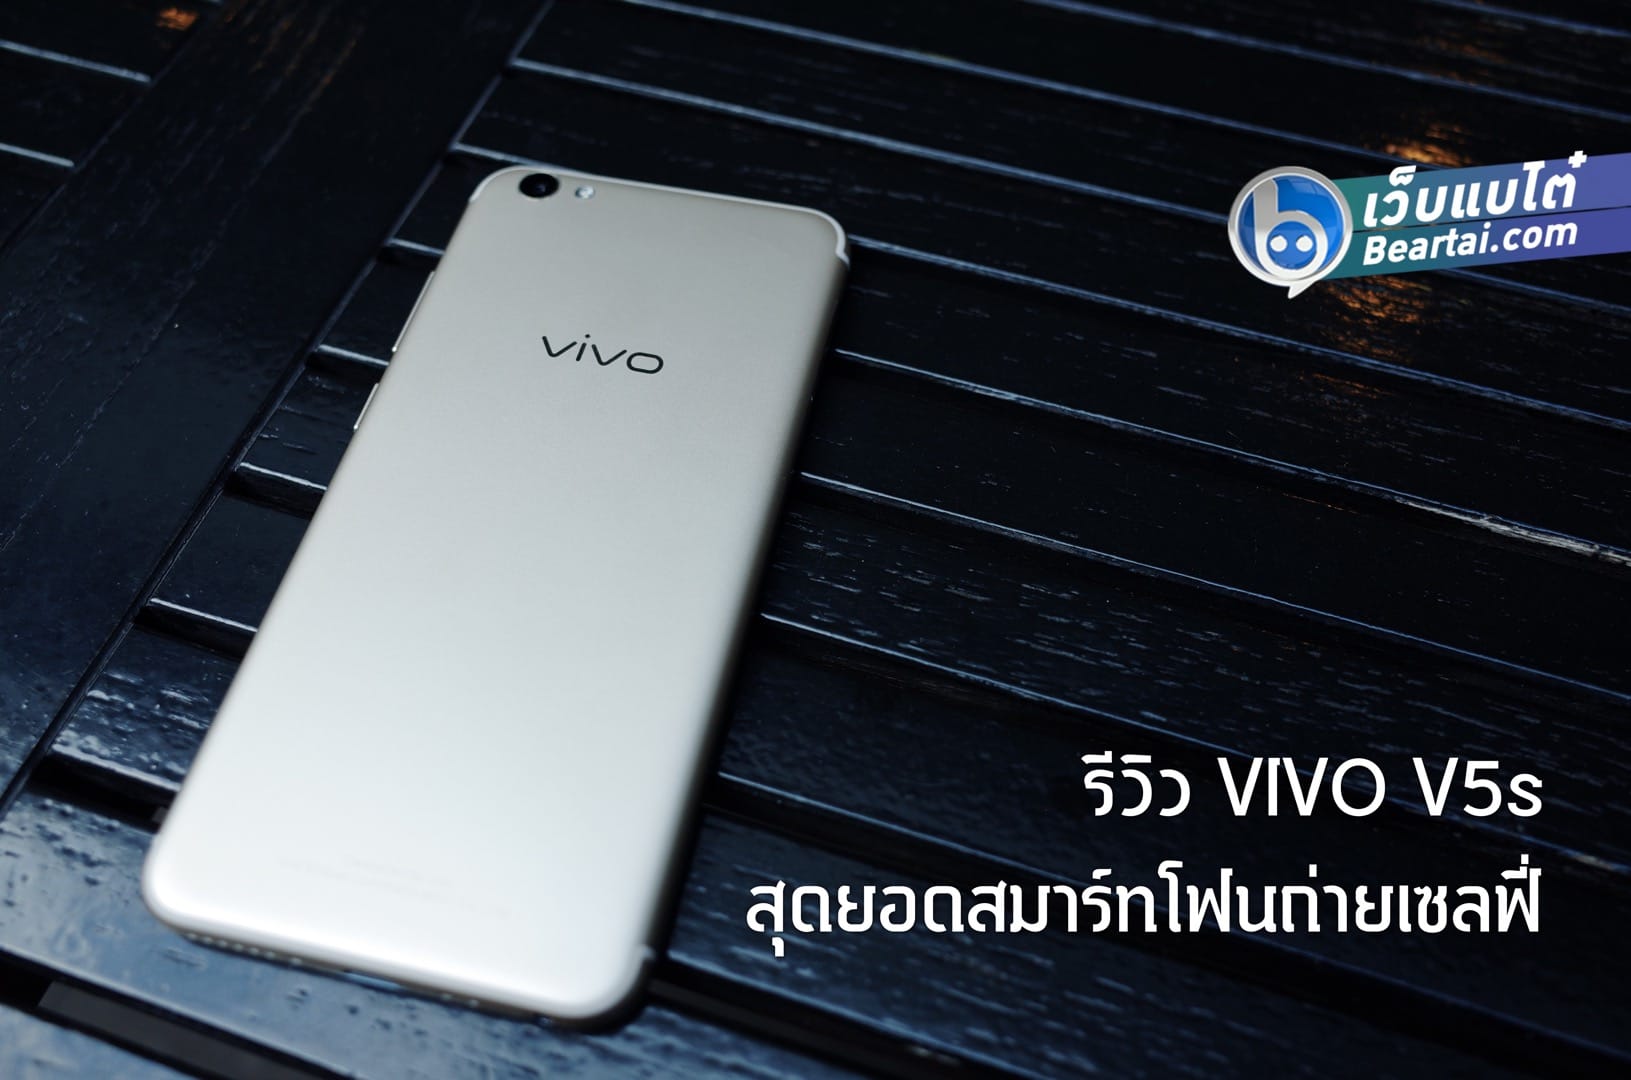 รีวิว Vivo V5s สมาร์ทโฟนเน้นเซลฟี่ ราคาไม่ถึงหมื่น